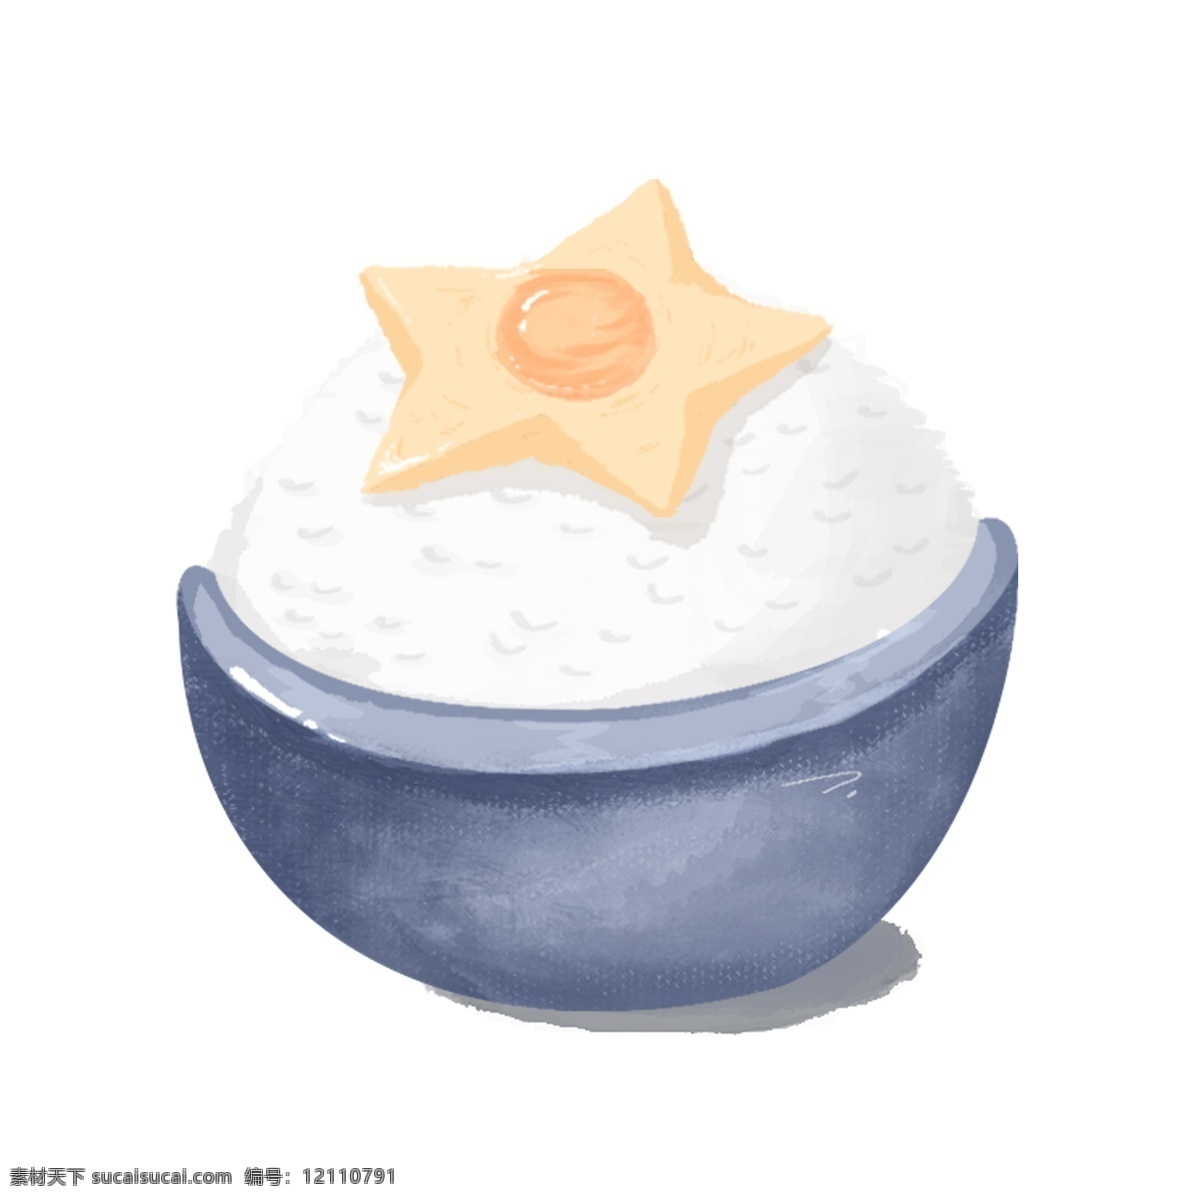 清新 蓝 碗装 日式 米饭 星形 鸡蛋 手绘 元素 吃货节 星形鸡蛋 蓝色碗 日式米饭 日本美食 日式料理 手绘插图 配图